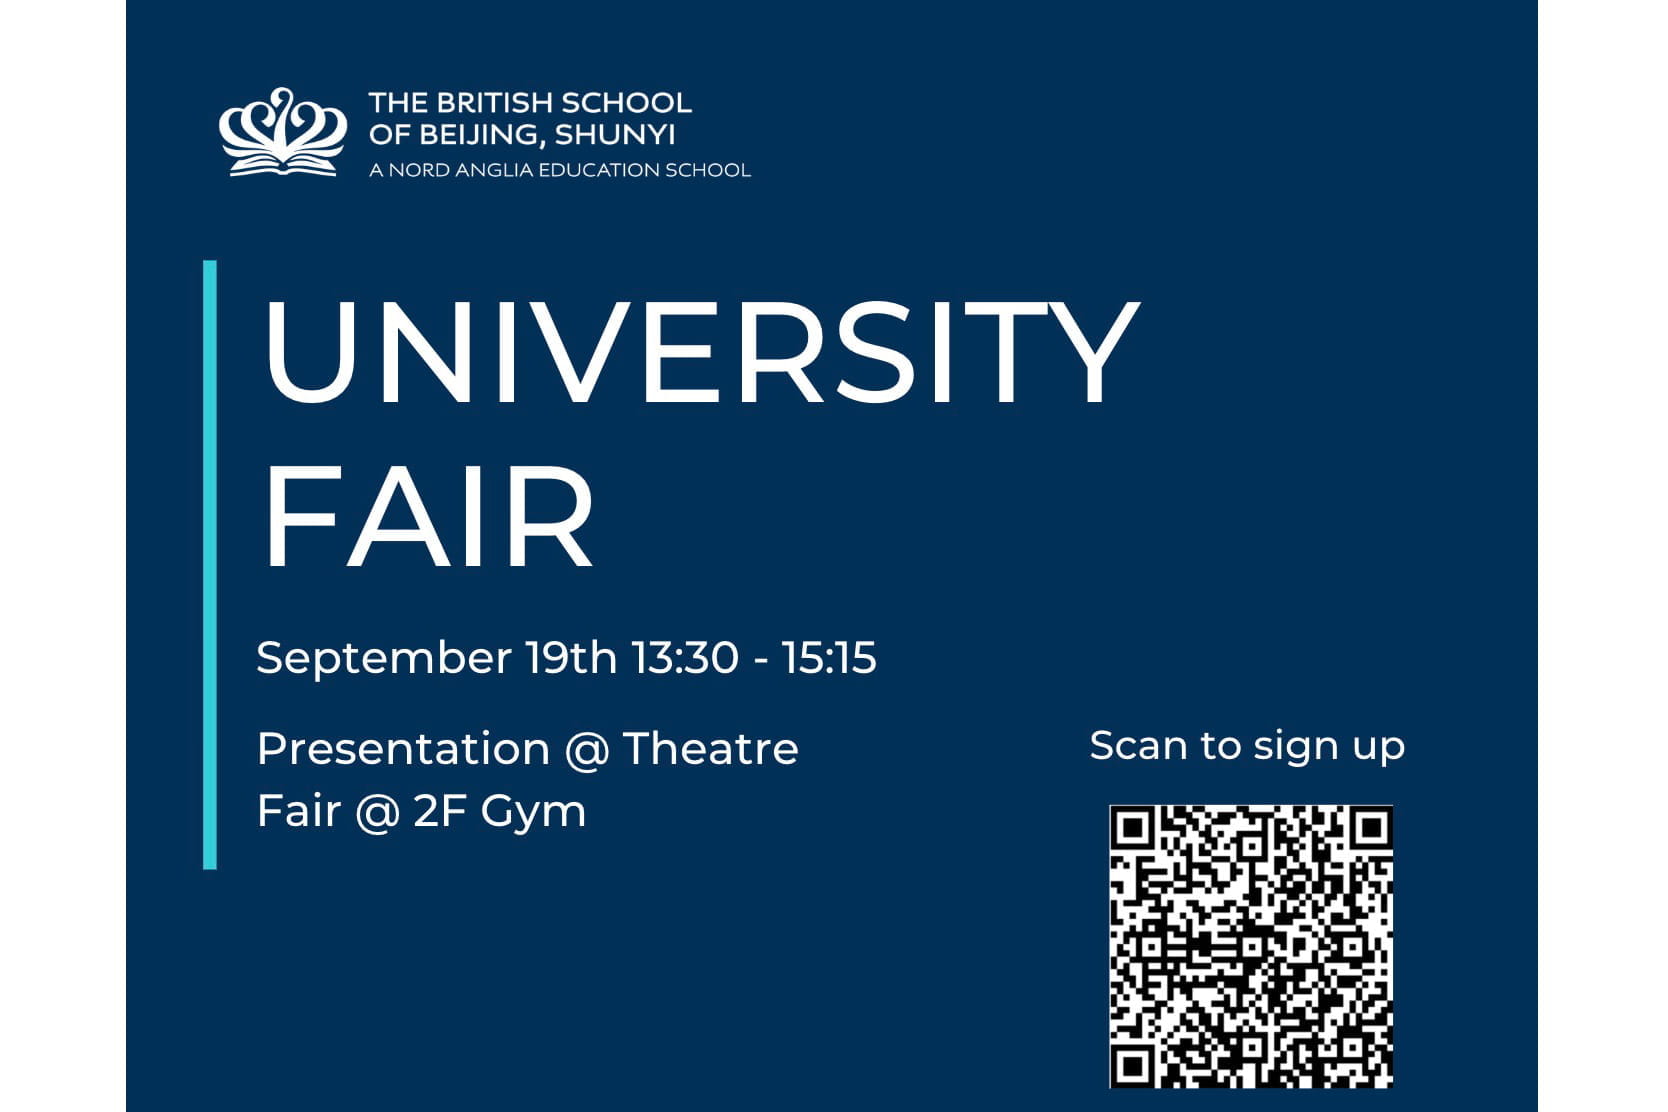 University Fair at BSB - 19th Sep 2023 - University Fair at BSB - 19th Sep 2023